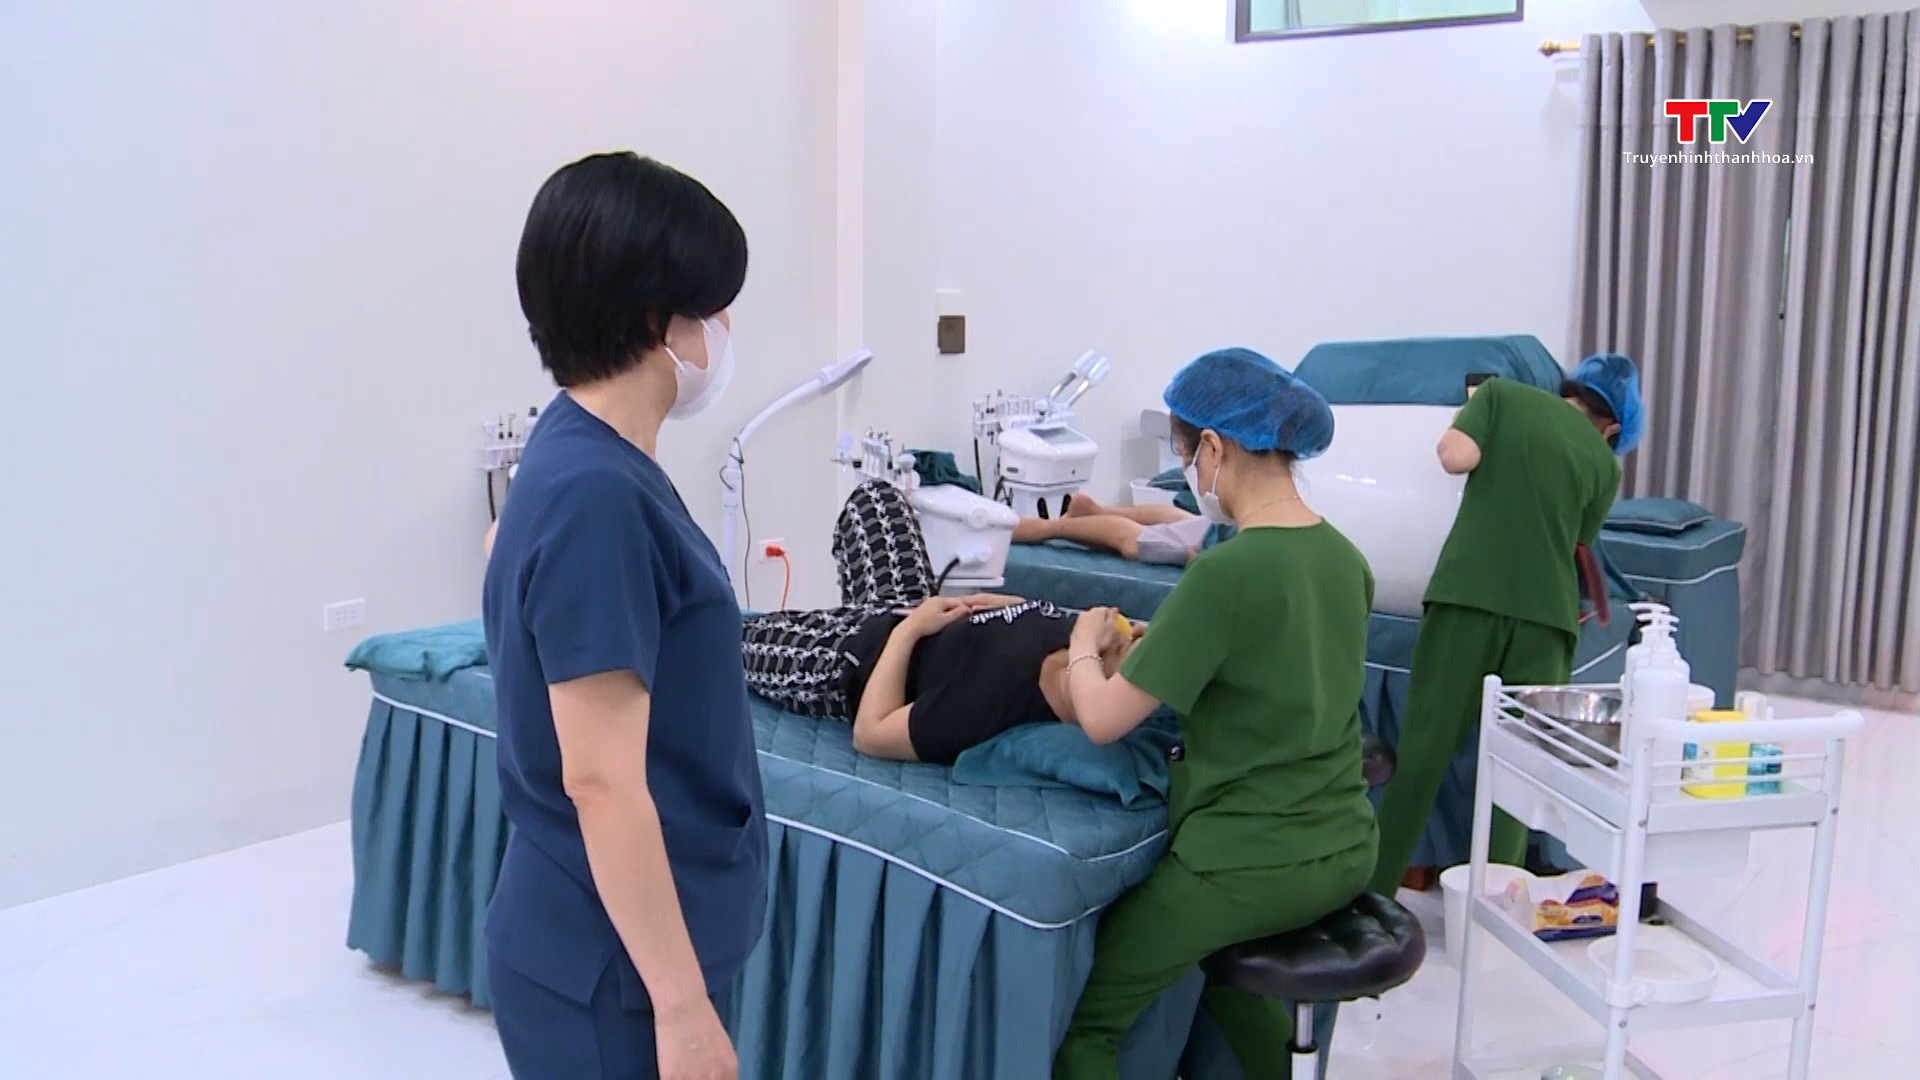 Cần xử lý nghiêm các cơ sở massage trá hình khám chữa bệnh- Ảnh 2.